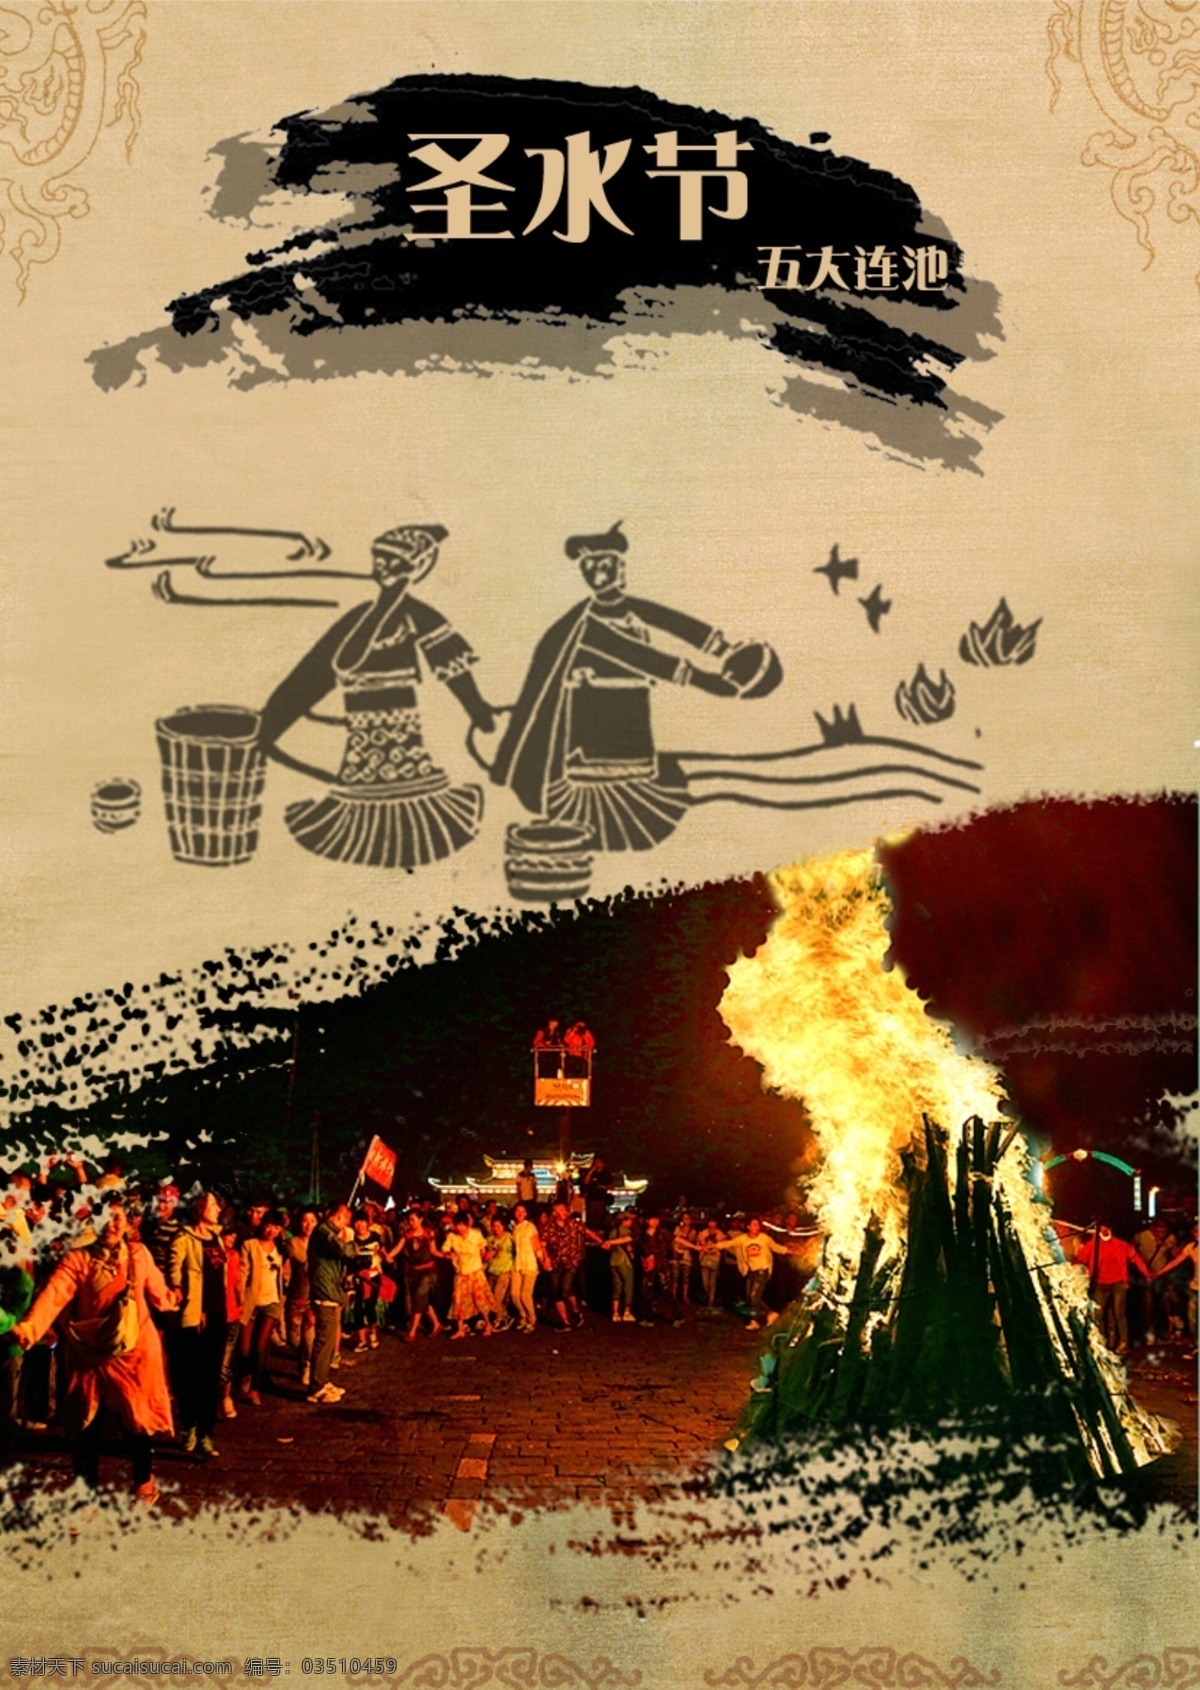 圣水节海报 五大连池 圣水节 篝火 狂欢 神鹿示水